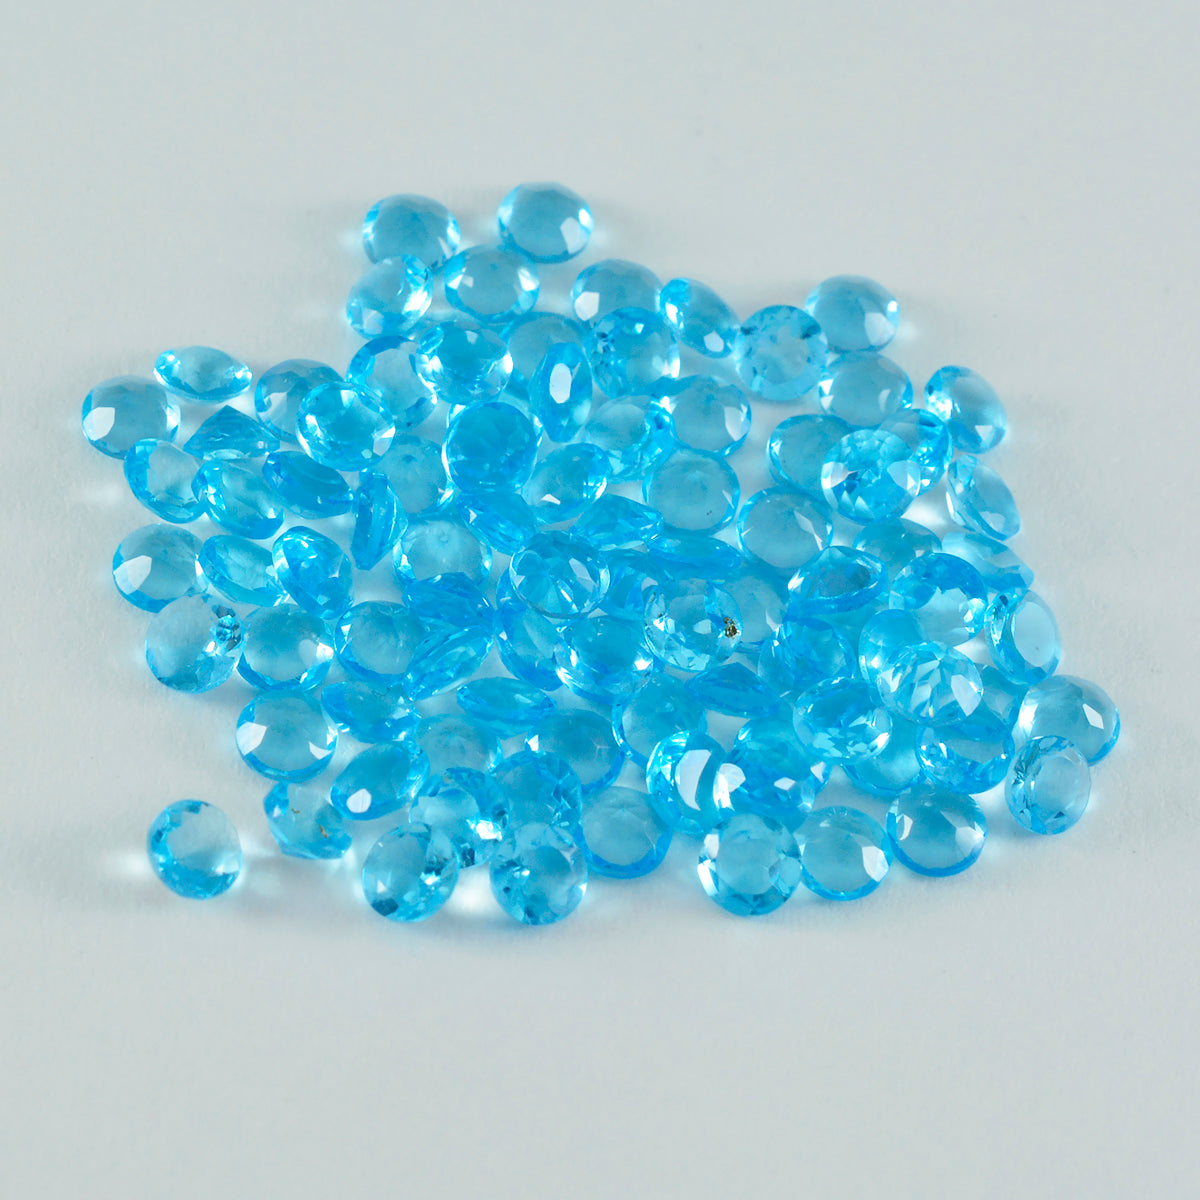 Riyogems 1 pieza topacio azul CZ facetado 3x3 mm forma redonda piedra de calidad dulce